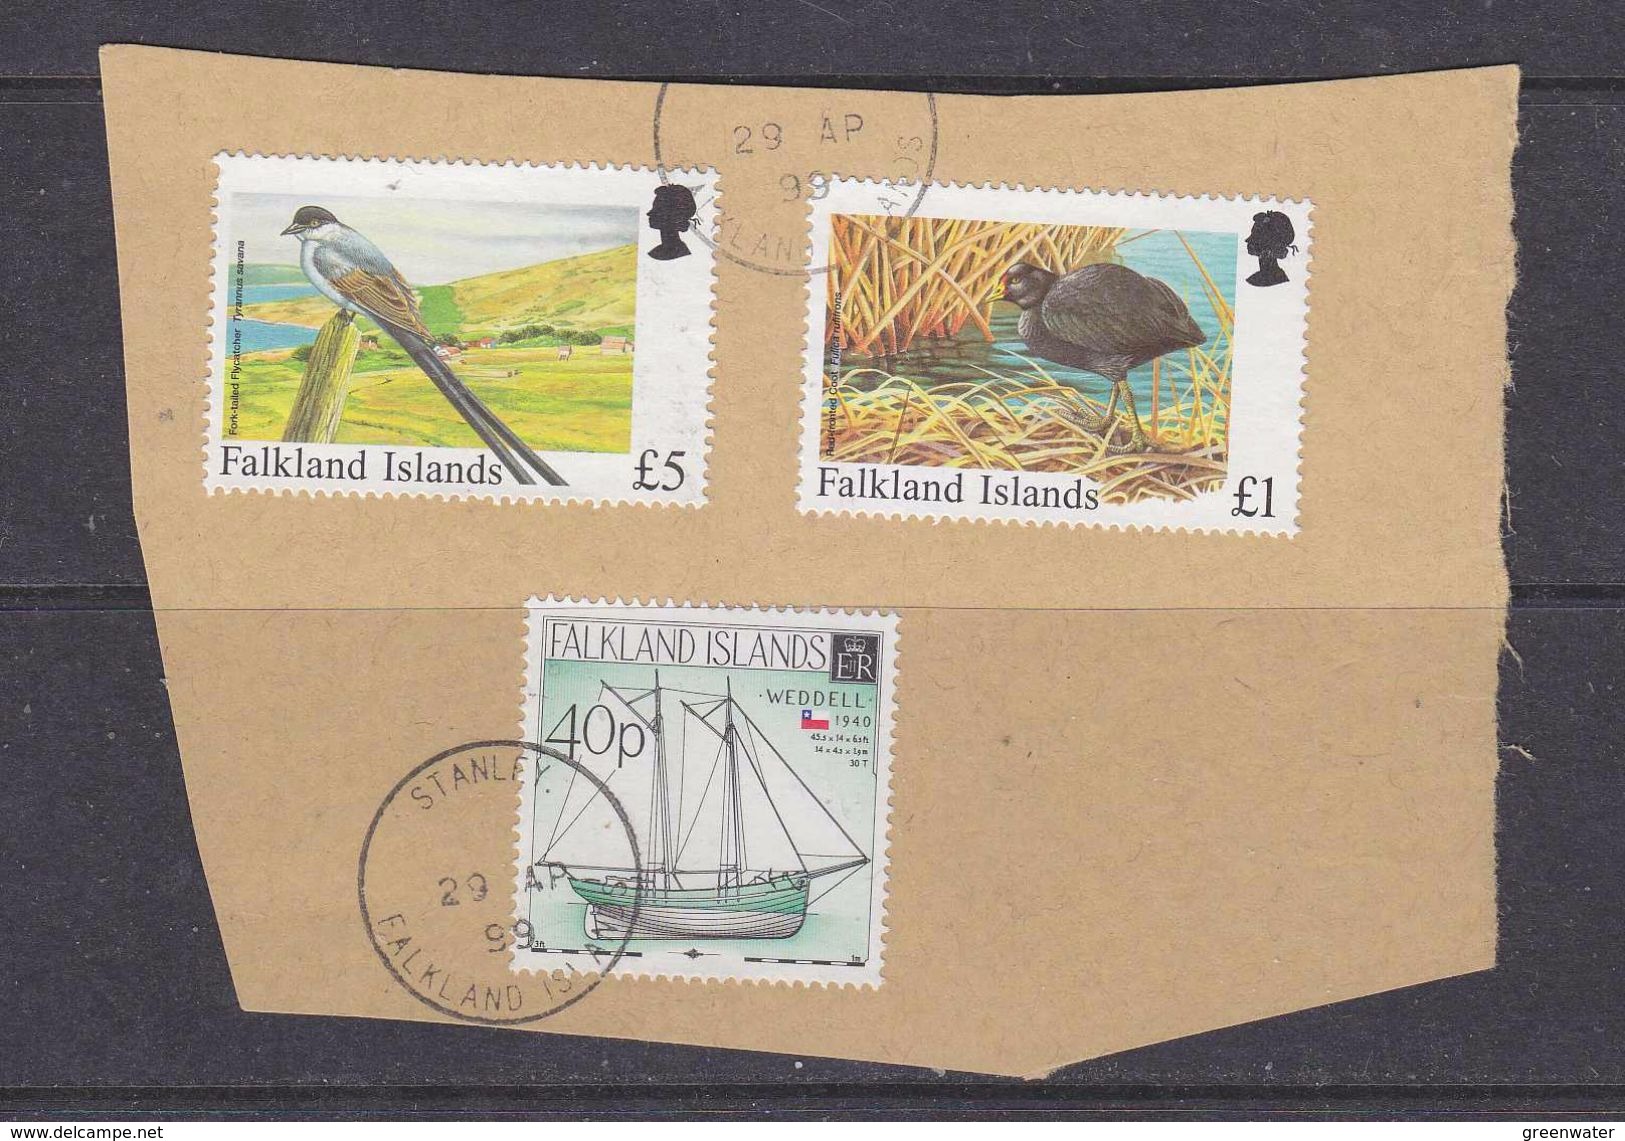 Falkland Islands 1999 3v Used On Paper (37154F) - Falkland